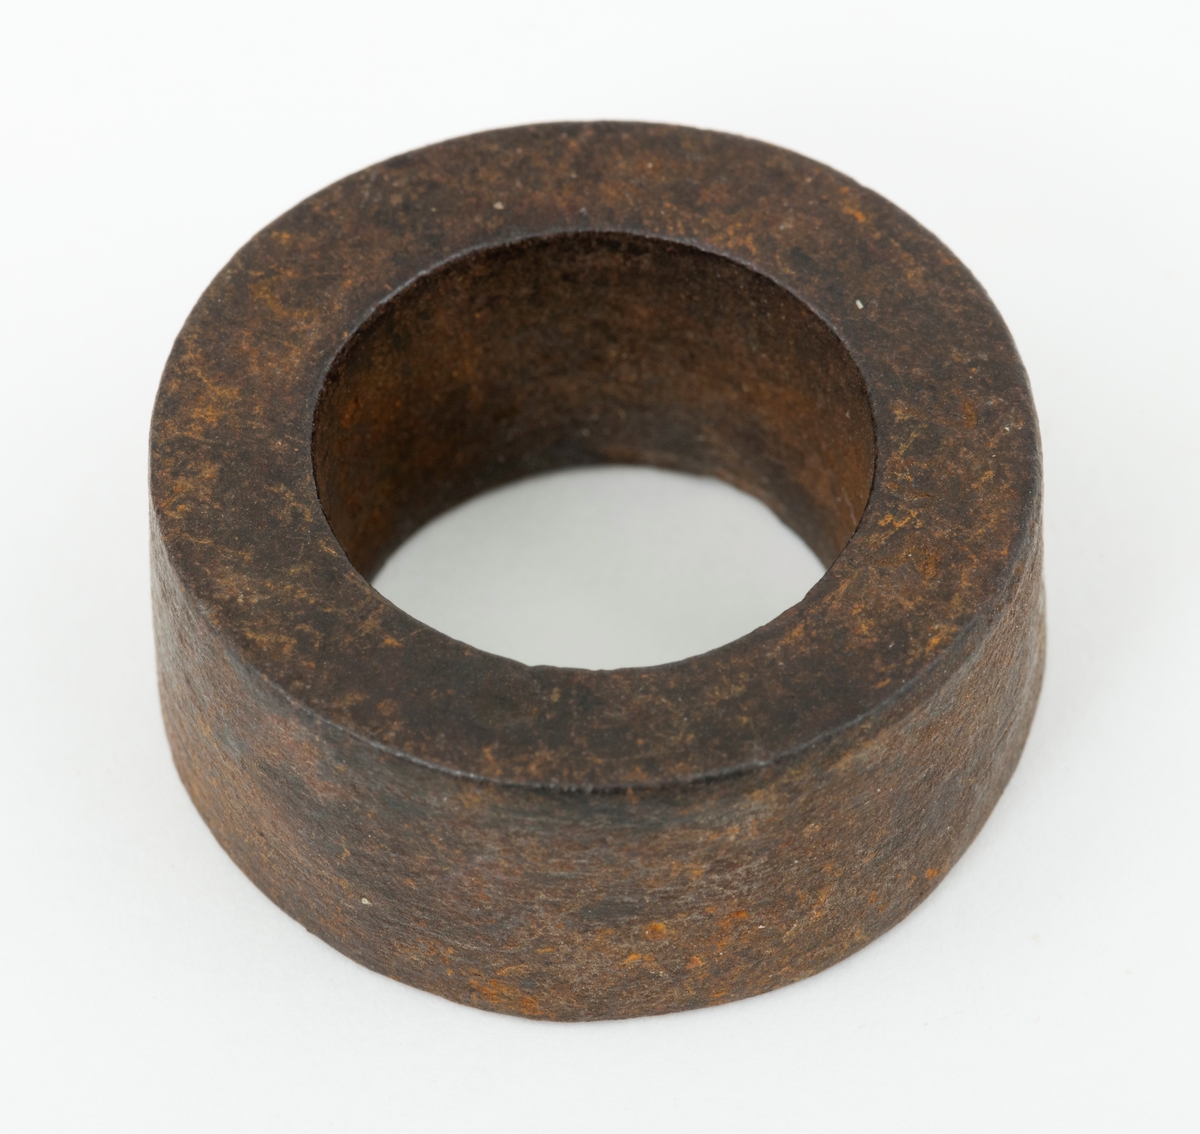 Skive – en jernring, brukt som mellomlegg ved et sammenføyingspunkt på et redskap eller en teknisk installasjon. Skiva eller ringen har en utvendig diameter på 3,5 centimeter. Den innvendige diameteren er 2,1 centimeter. Skiva er drøyt 1,4 centimeter tjukk. Den veier 59 gram.